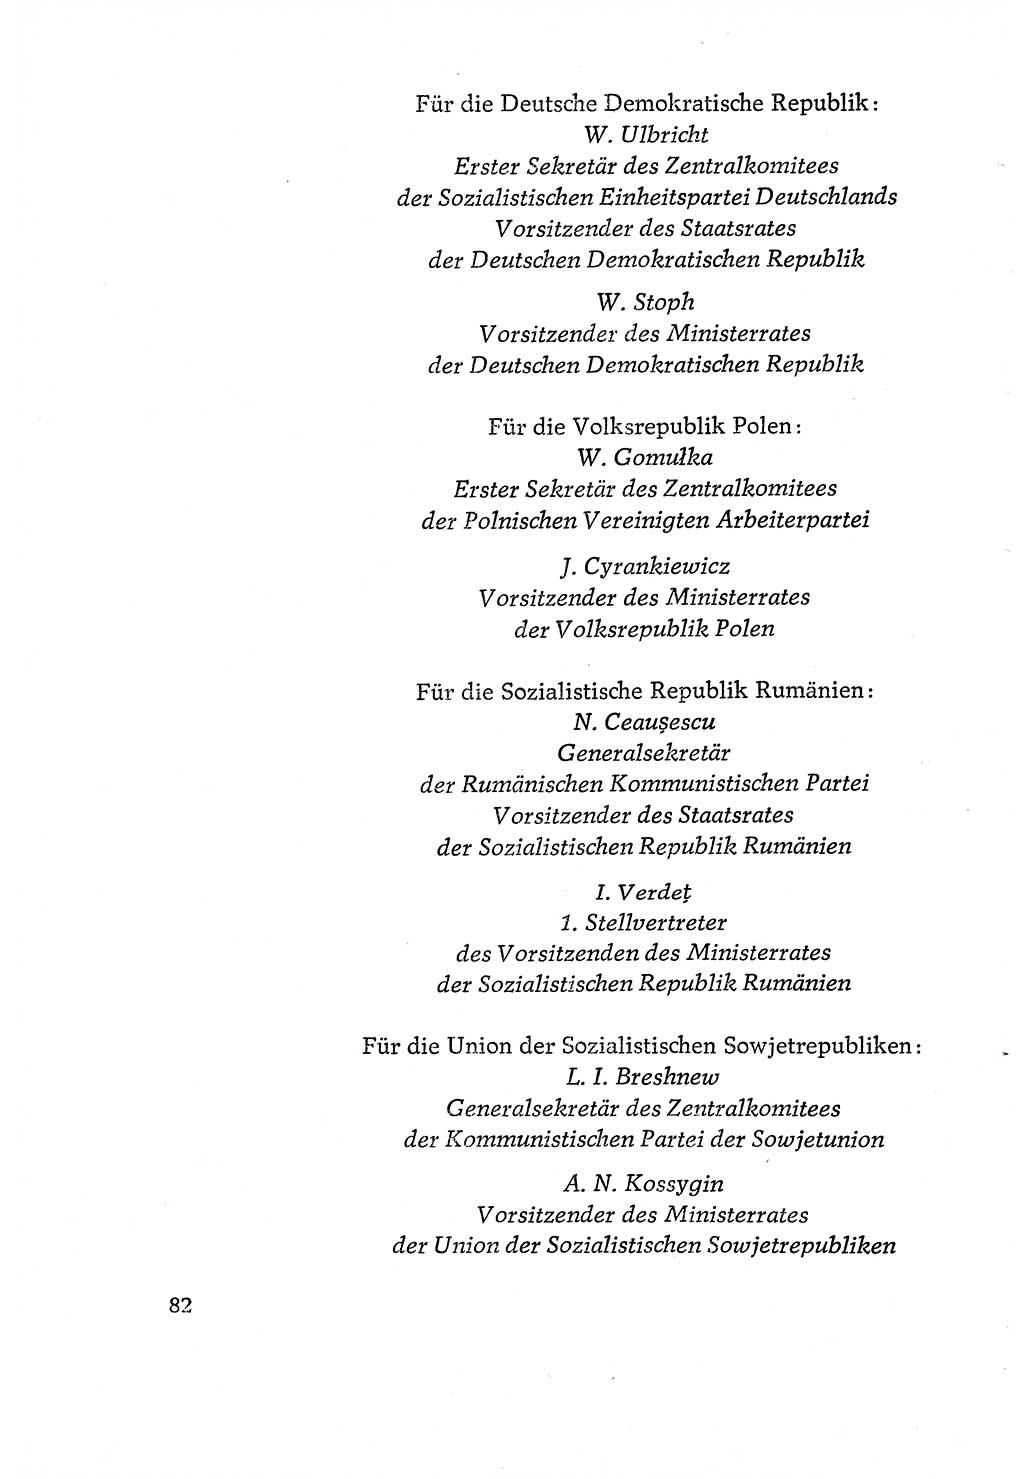 Dokumente der Sozialistischen Einheitspartei Deutschlands (SED) [Deutsche Demokratische Republik (DDR)] 1970-1971, Seite 82 (Dok. SED DDR 1970-1971, S. 82)